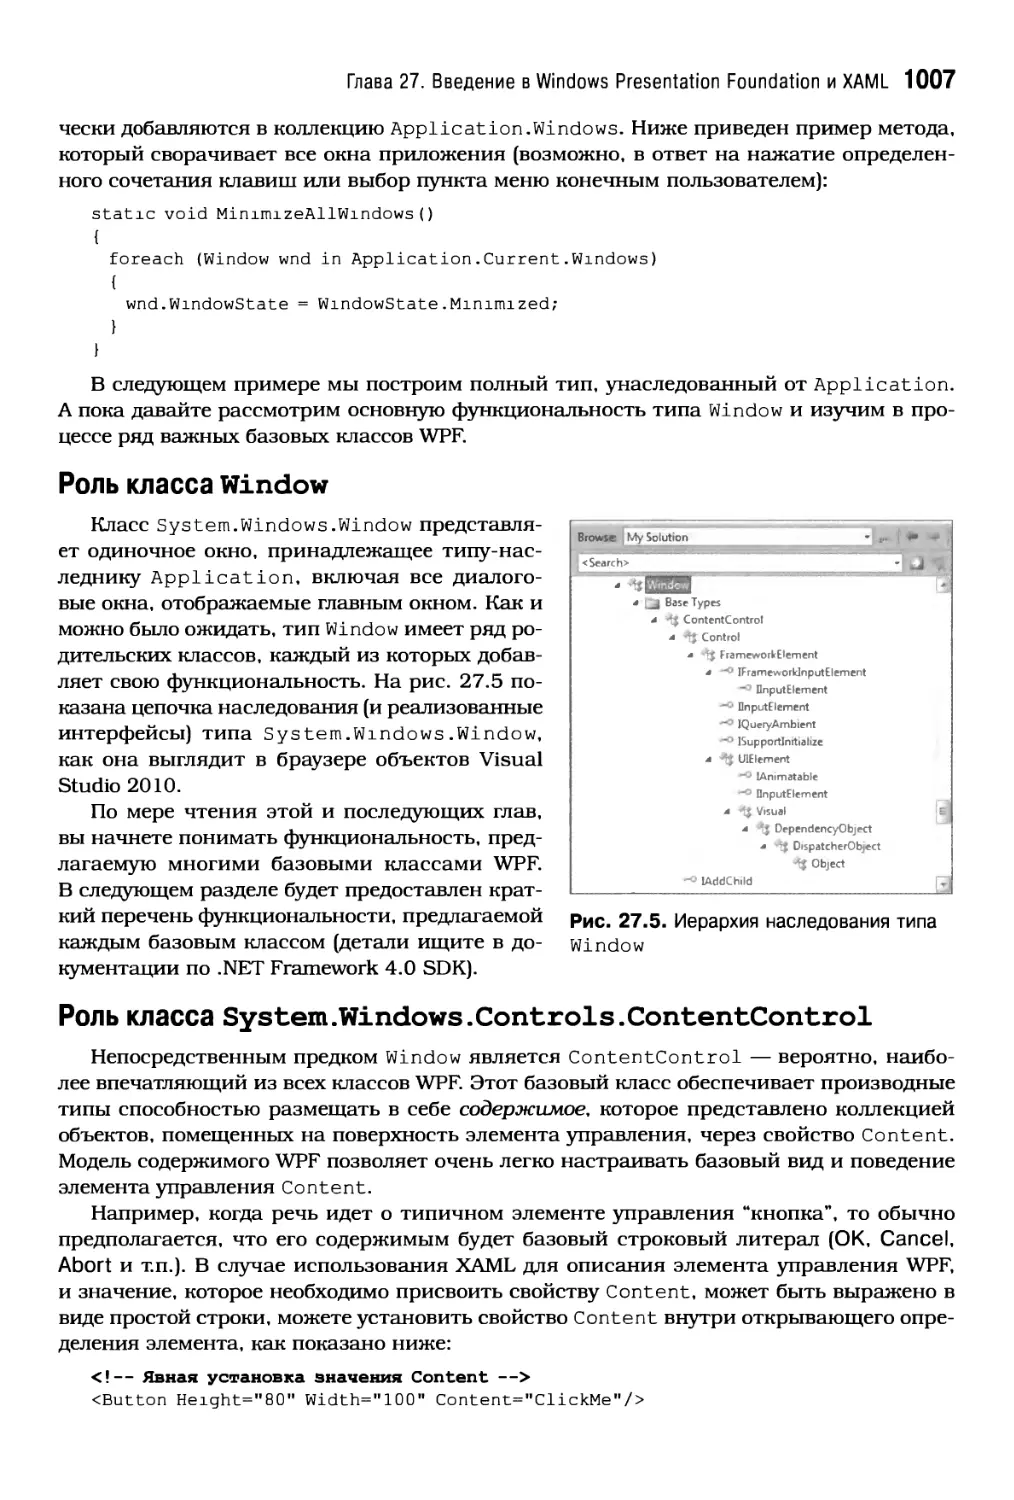 Роль класса Wi ndow
Роль класса System.Windows.Controls.ContentControl